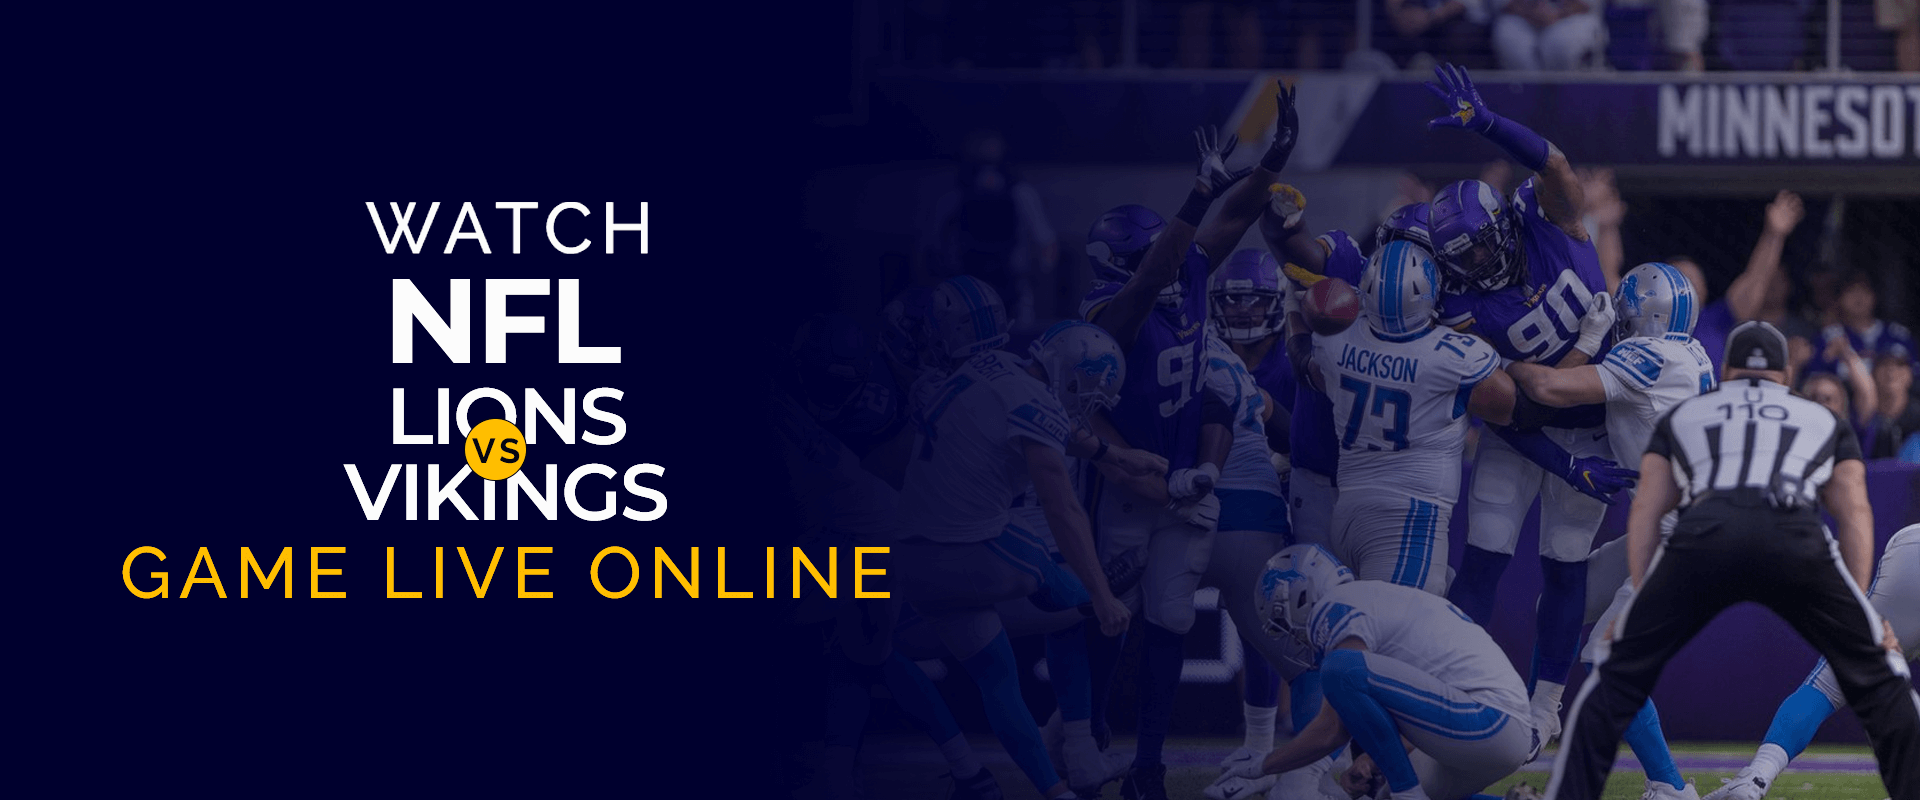 Oglądaj mecz NFL Lions vs Vikings na żywo w Internecie